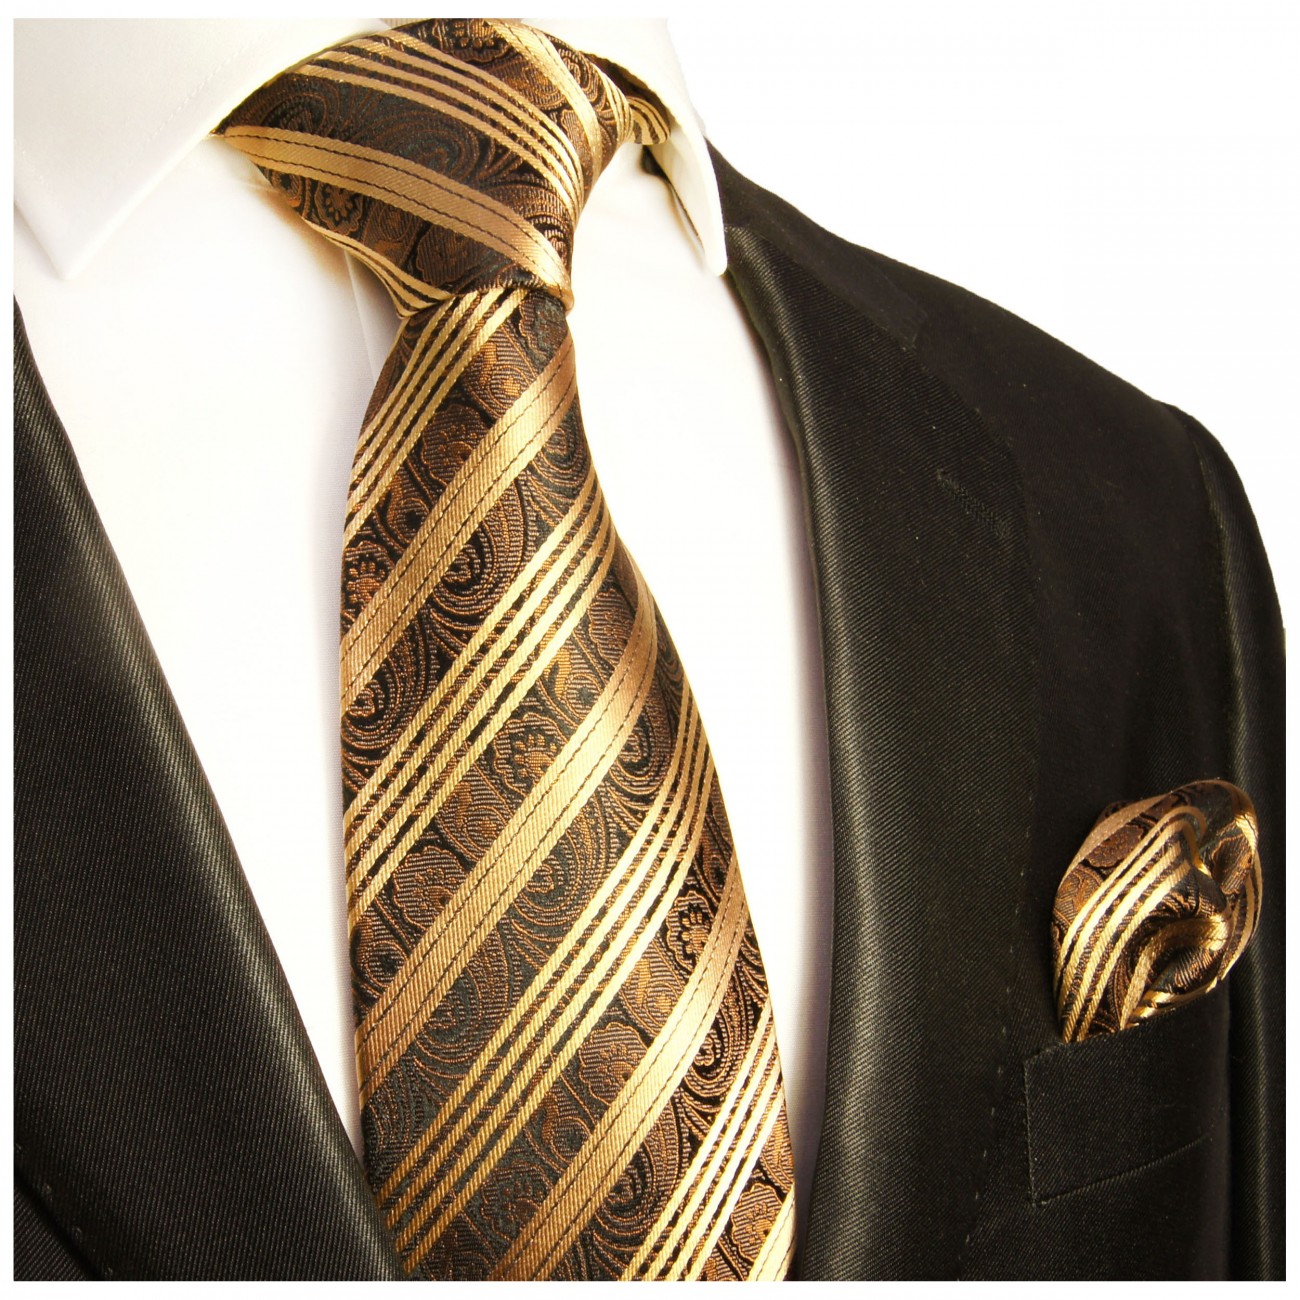 Krawatte gold braun gestreift mit Einstecktuch